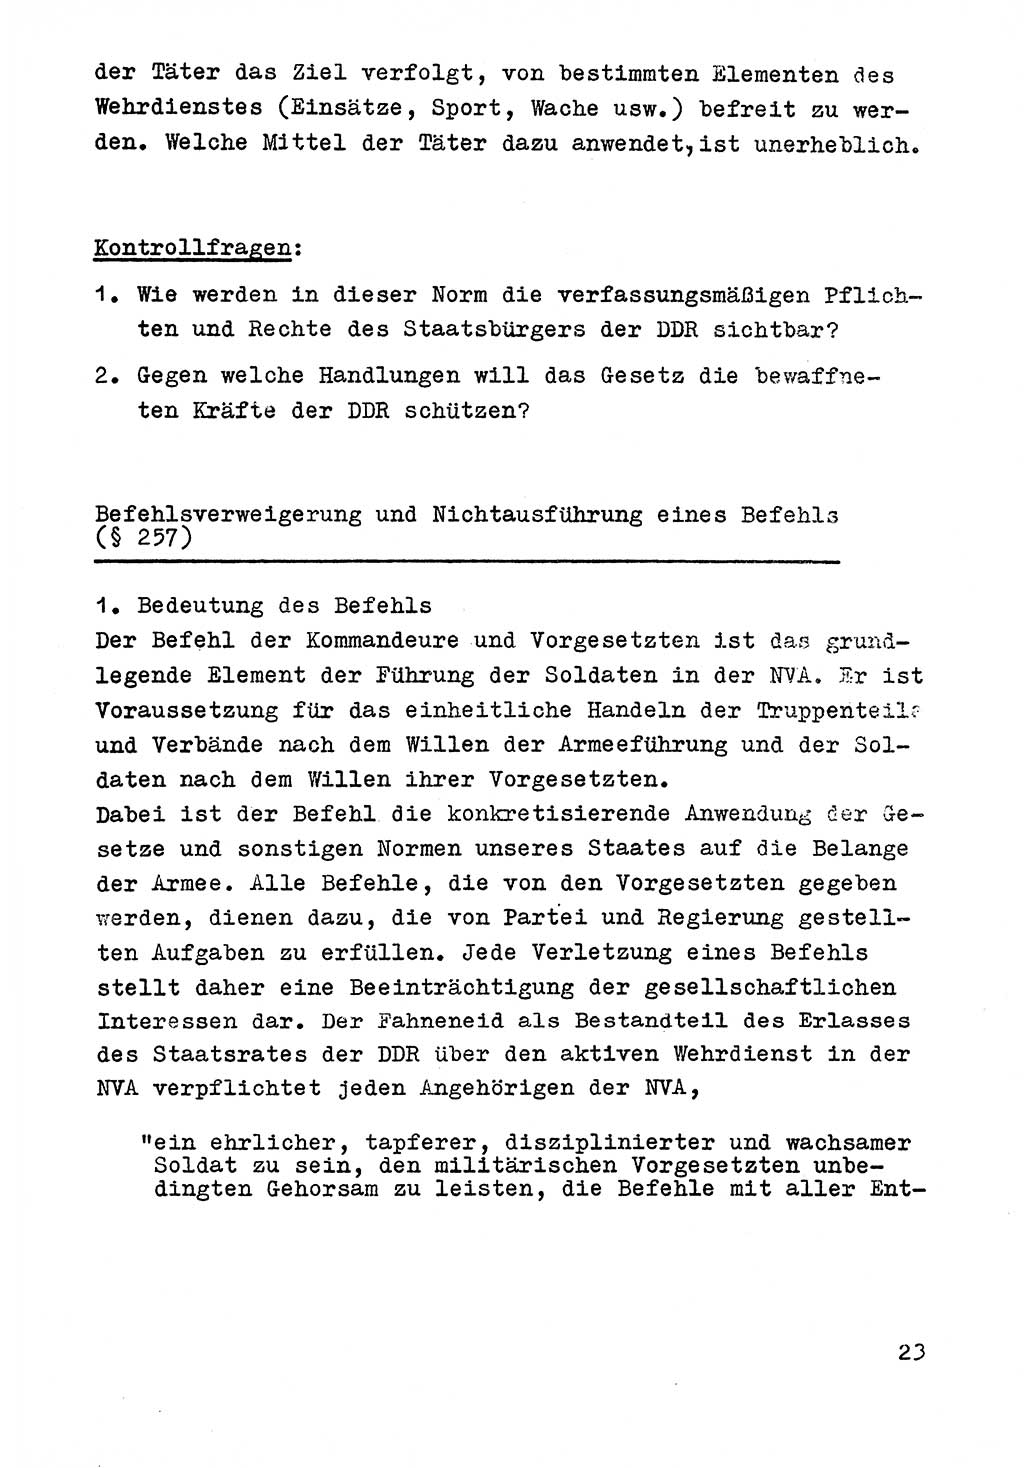 Strafrecht der DDR (Deutsche Demokratische Republik), Besonderer Teil, Lehrmaterial, Heft 9 1969, Seite 23 (Strafr. DDR BT Lehrmat. H. 9 1969, S. 23)